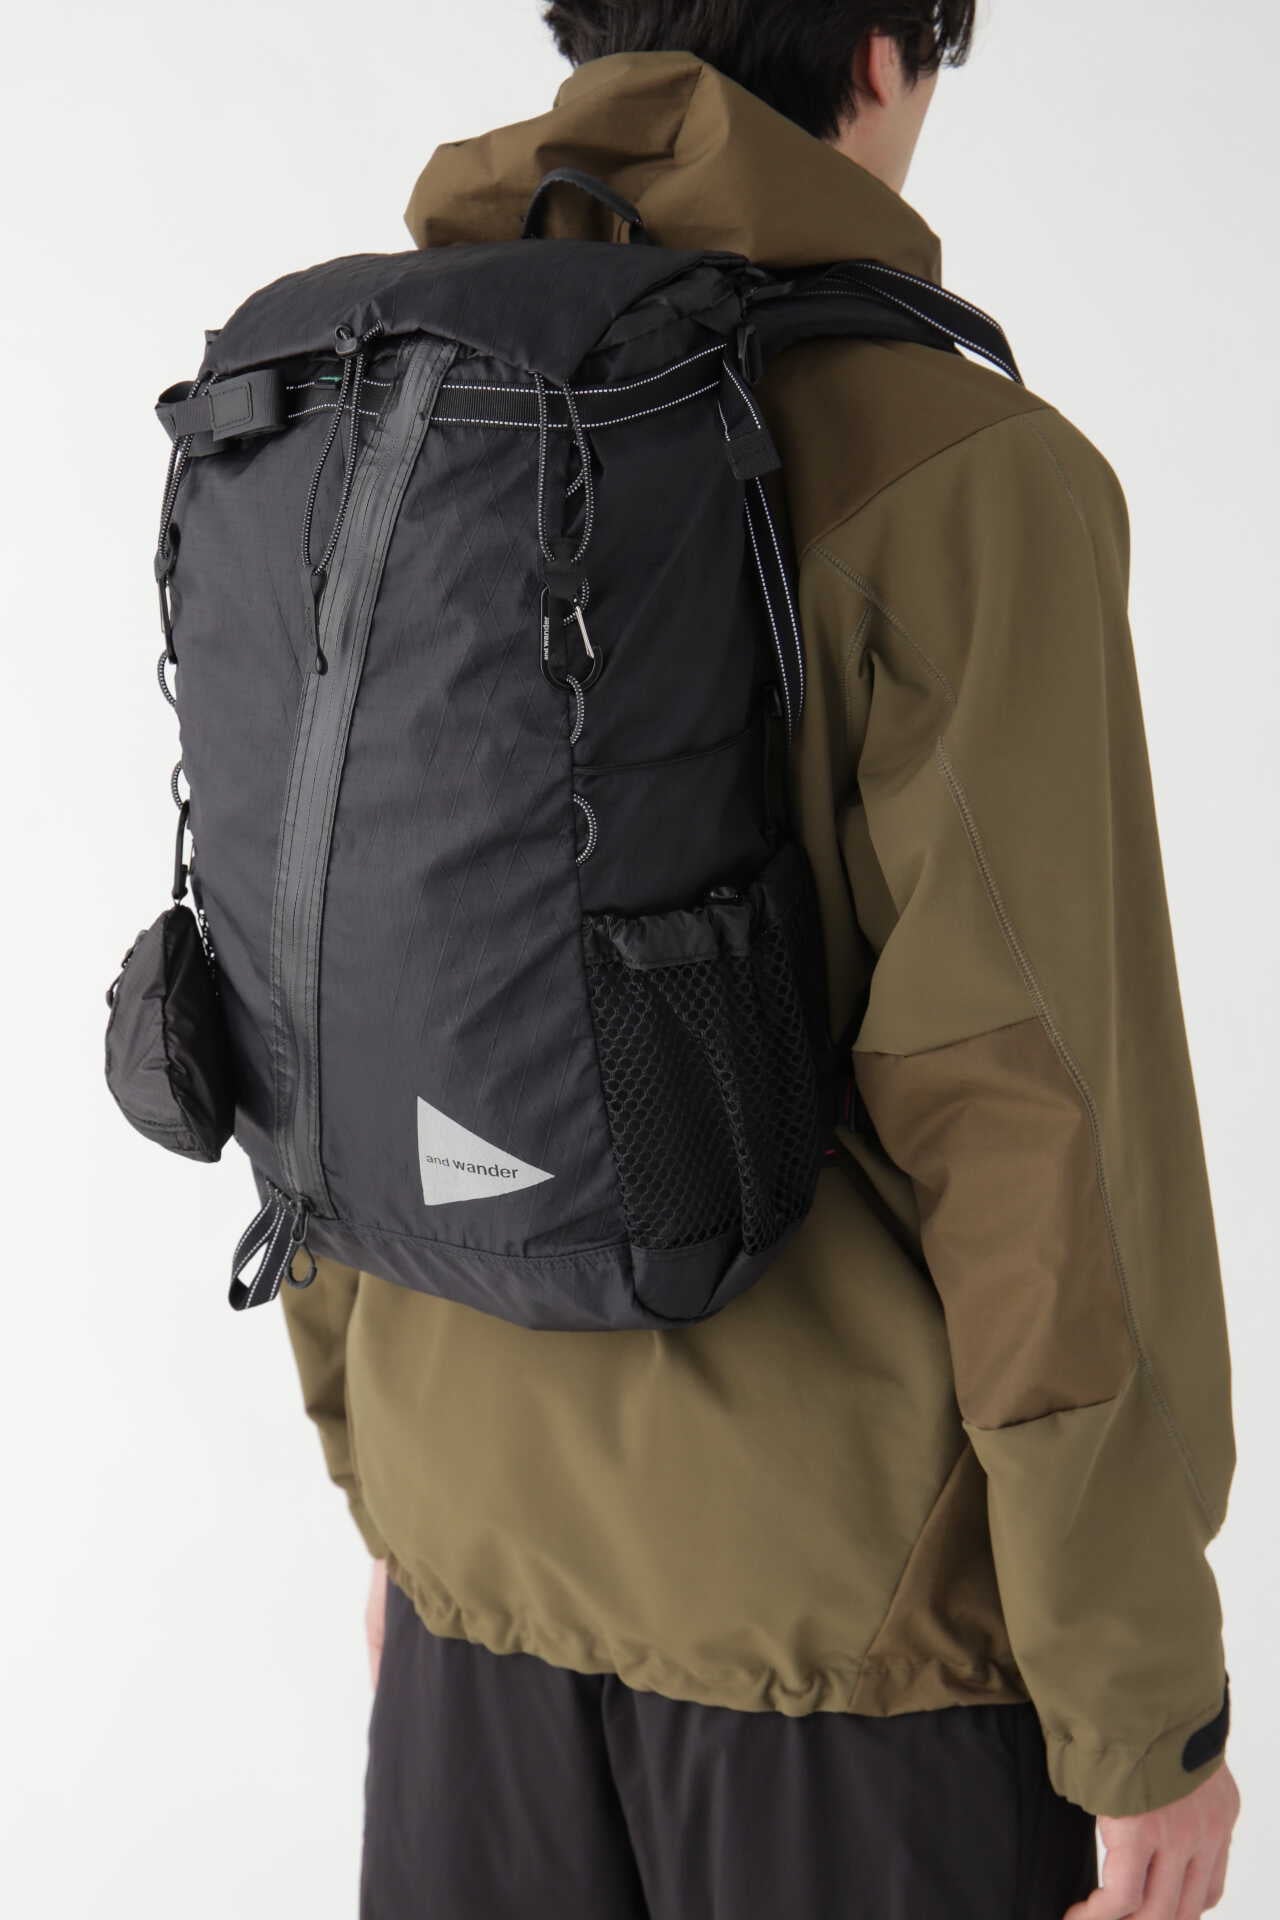 675グラムand wander X-Pac 30L backpack